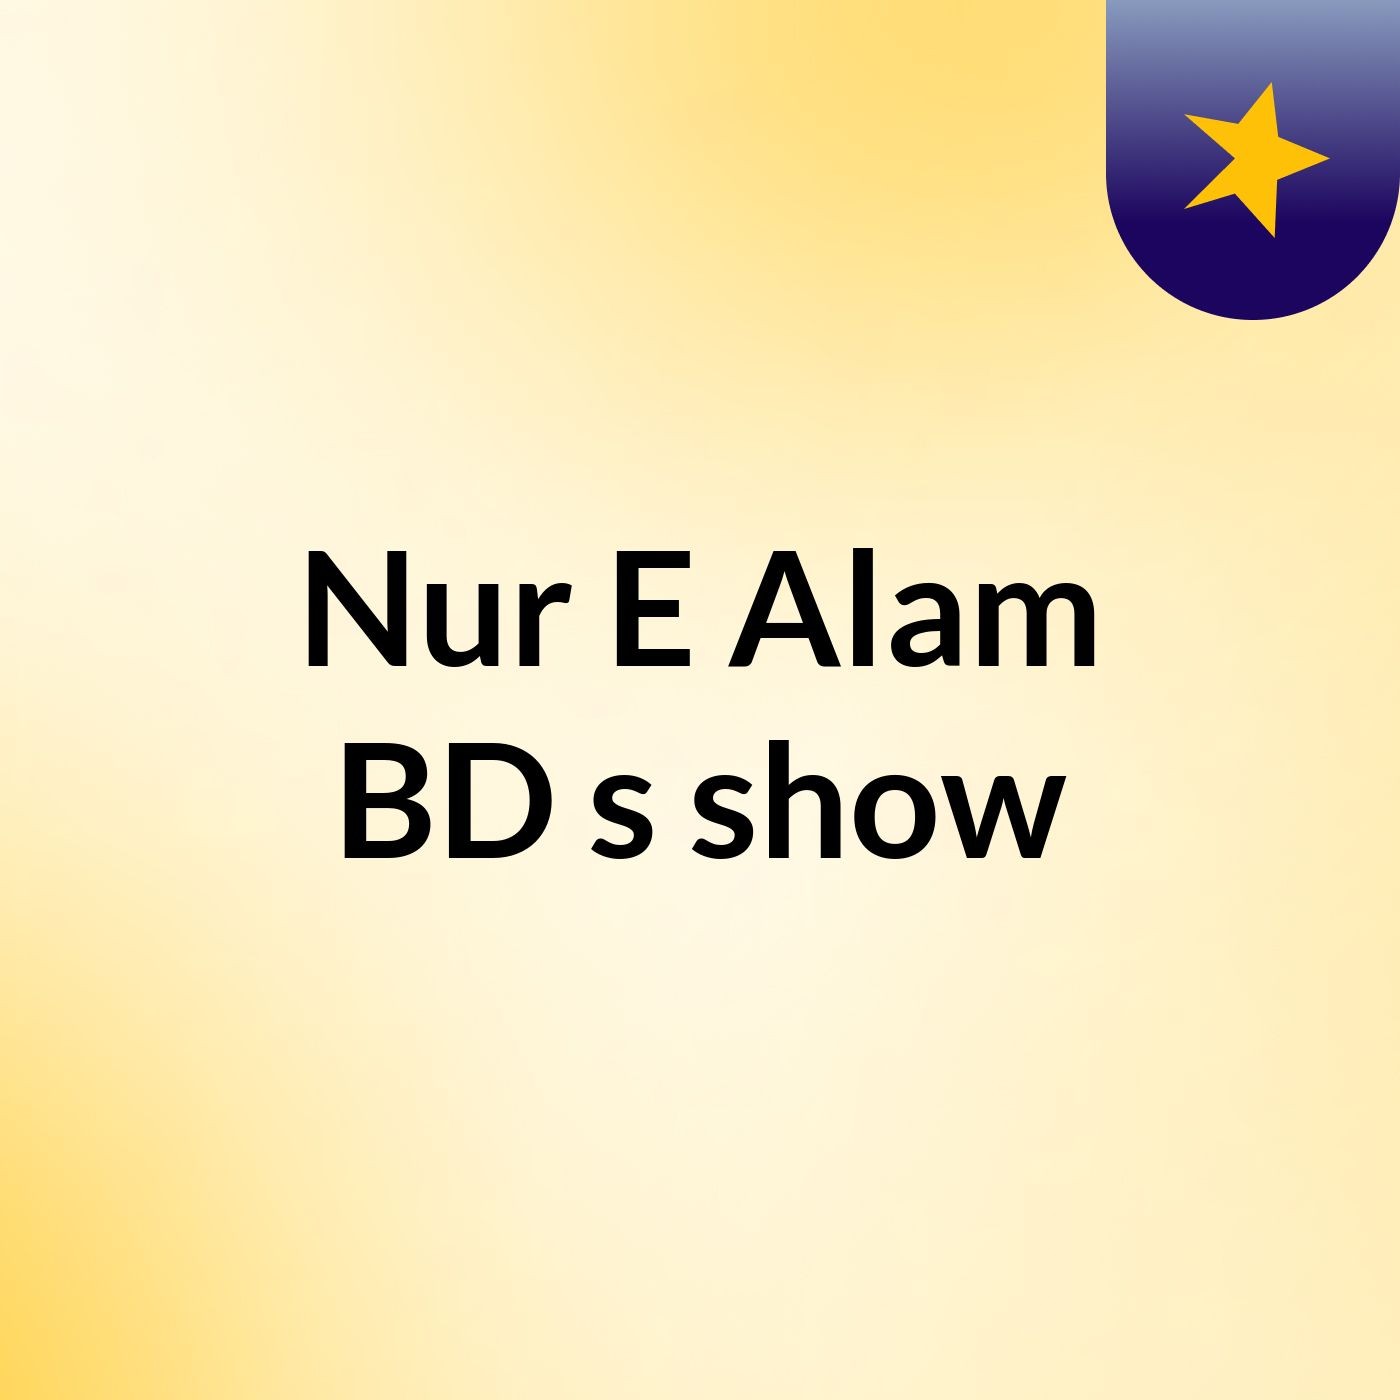 Nur E Alam BD's show